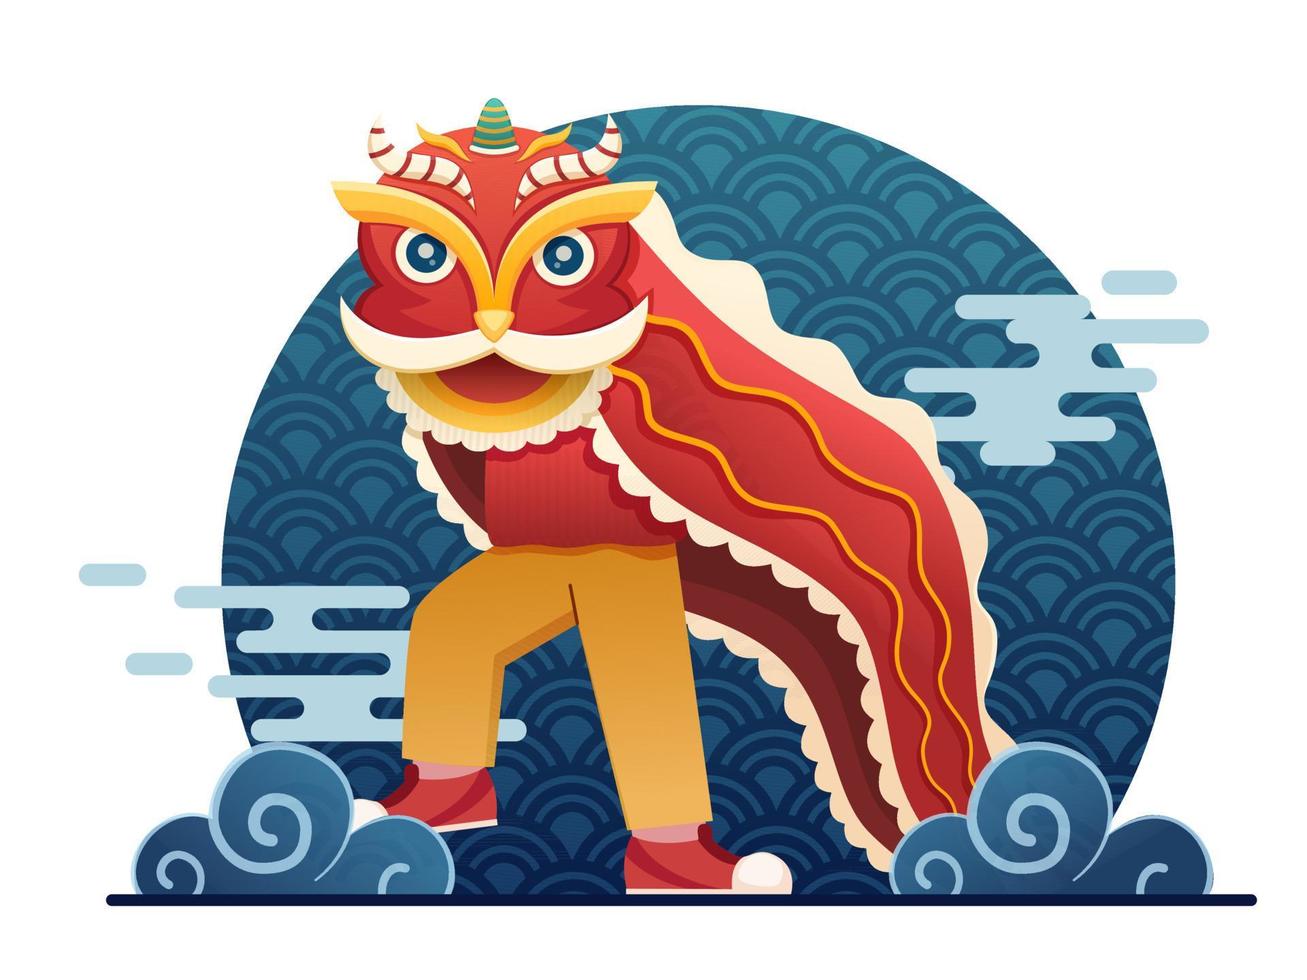 menschen, die traditionellen chinesischen löwentanz aufführen, um das chinesische neujahr zu feiern. Mondneujahr 2022 Jahr des Tigers. kann für Grußkarten, Einladungen, Banner, Poster, Postkarten, Web, Druck verwendet werden. vektor